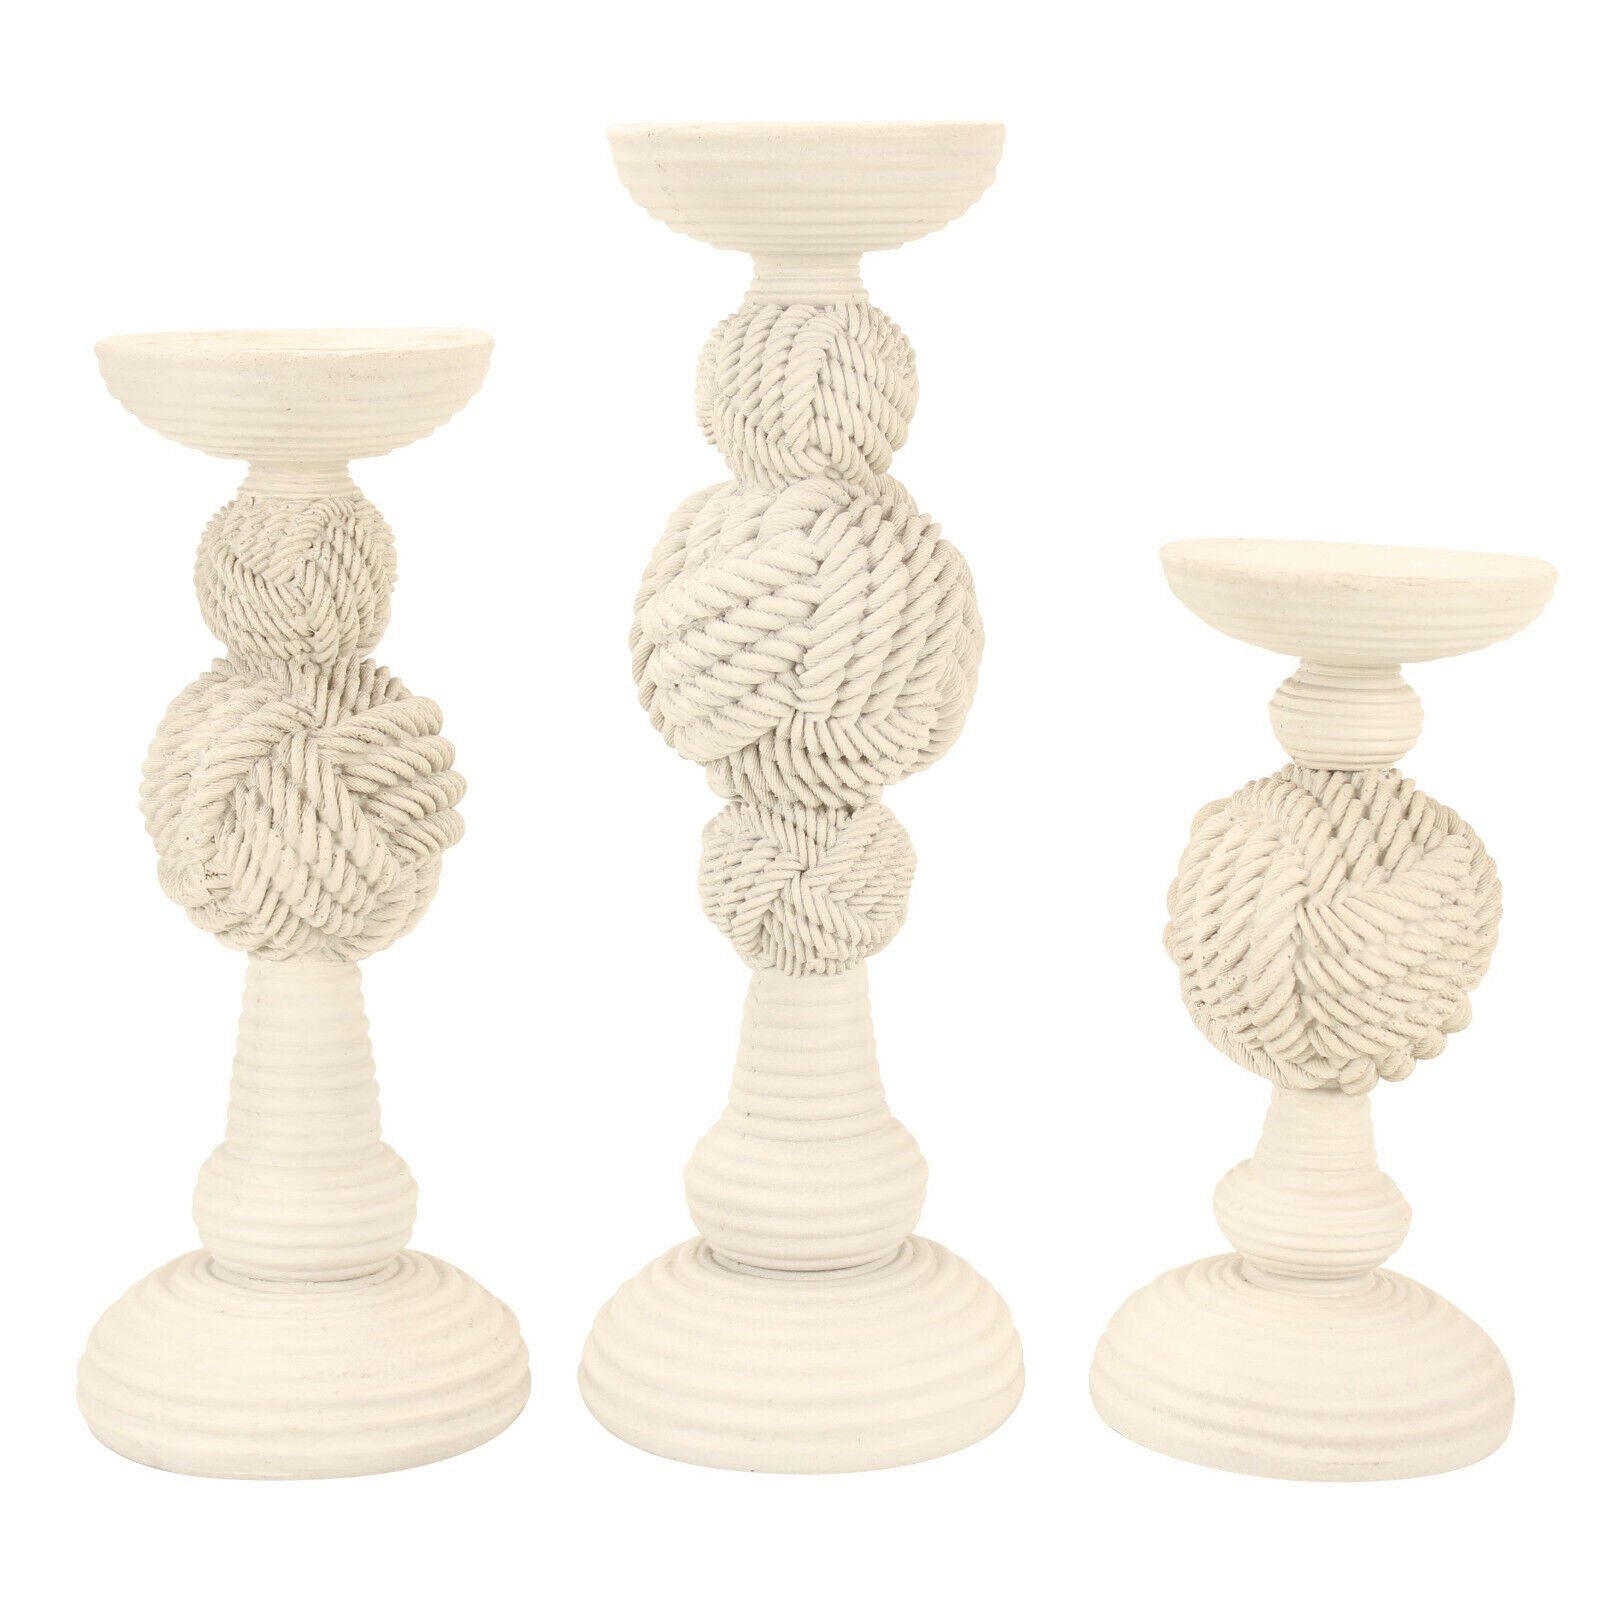 Online-Fuchs Kerzenständer als 3er Set Kerzenhalter im maritimen Stil für Stumpenkerzen (Creme-farbend, aus Polyresin, Rillen-Optik, für Kerzen bis zu 7,5 cm Durchmesser), mit Tau-Design, 3 Höhen (21, 26 und 31 cm) Deko